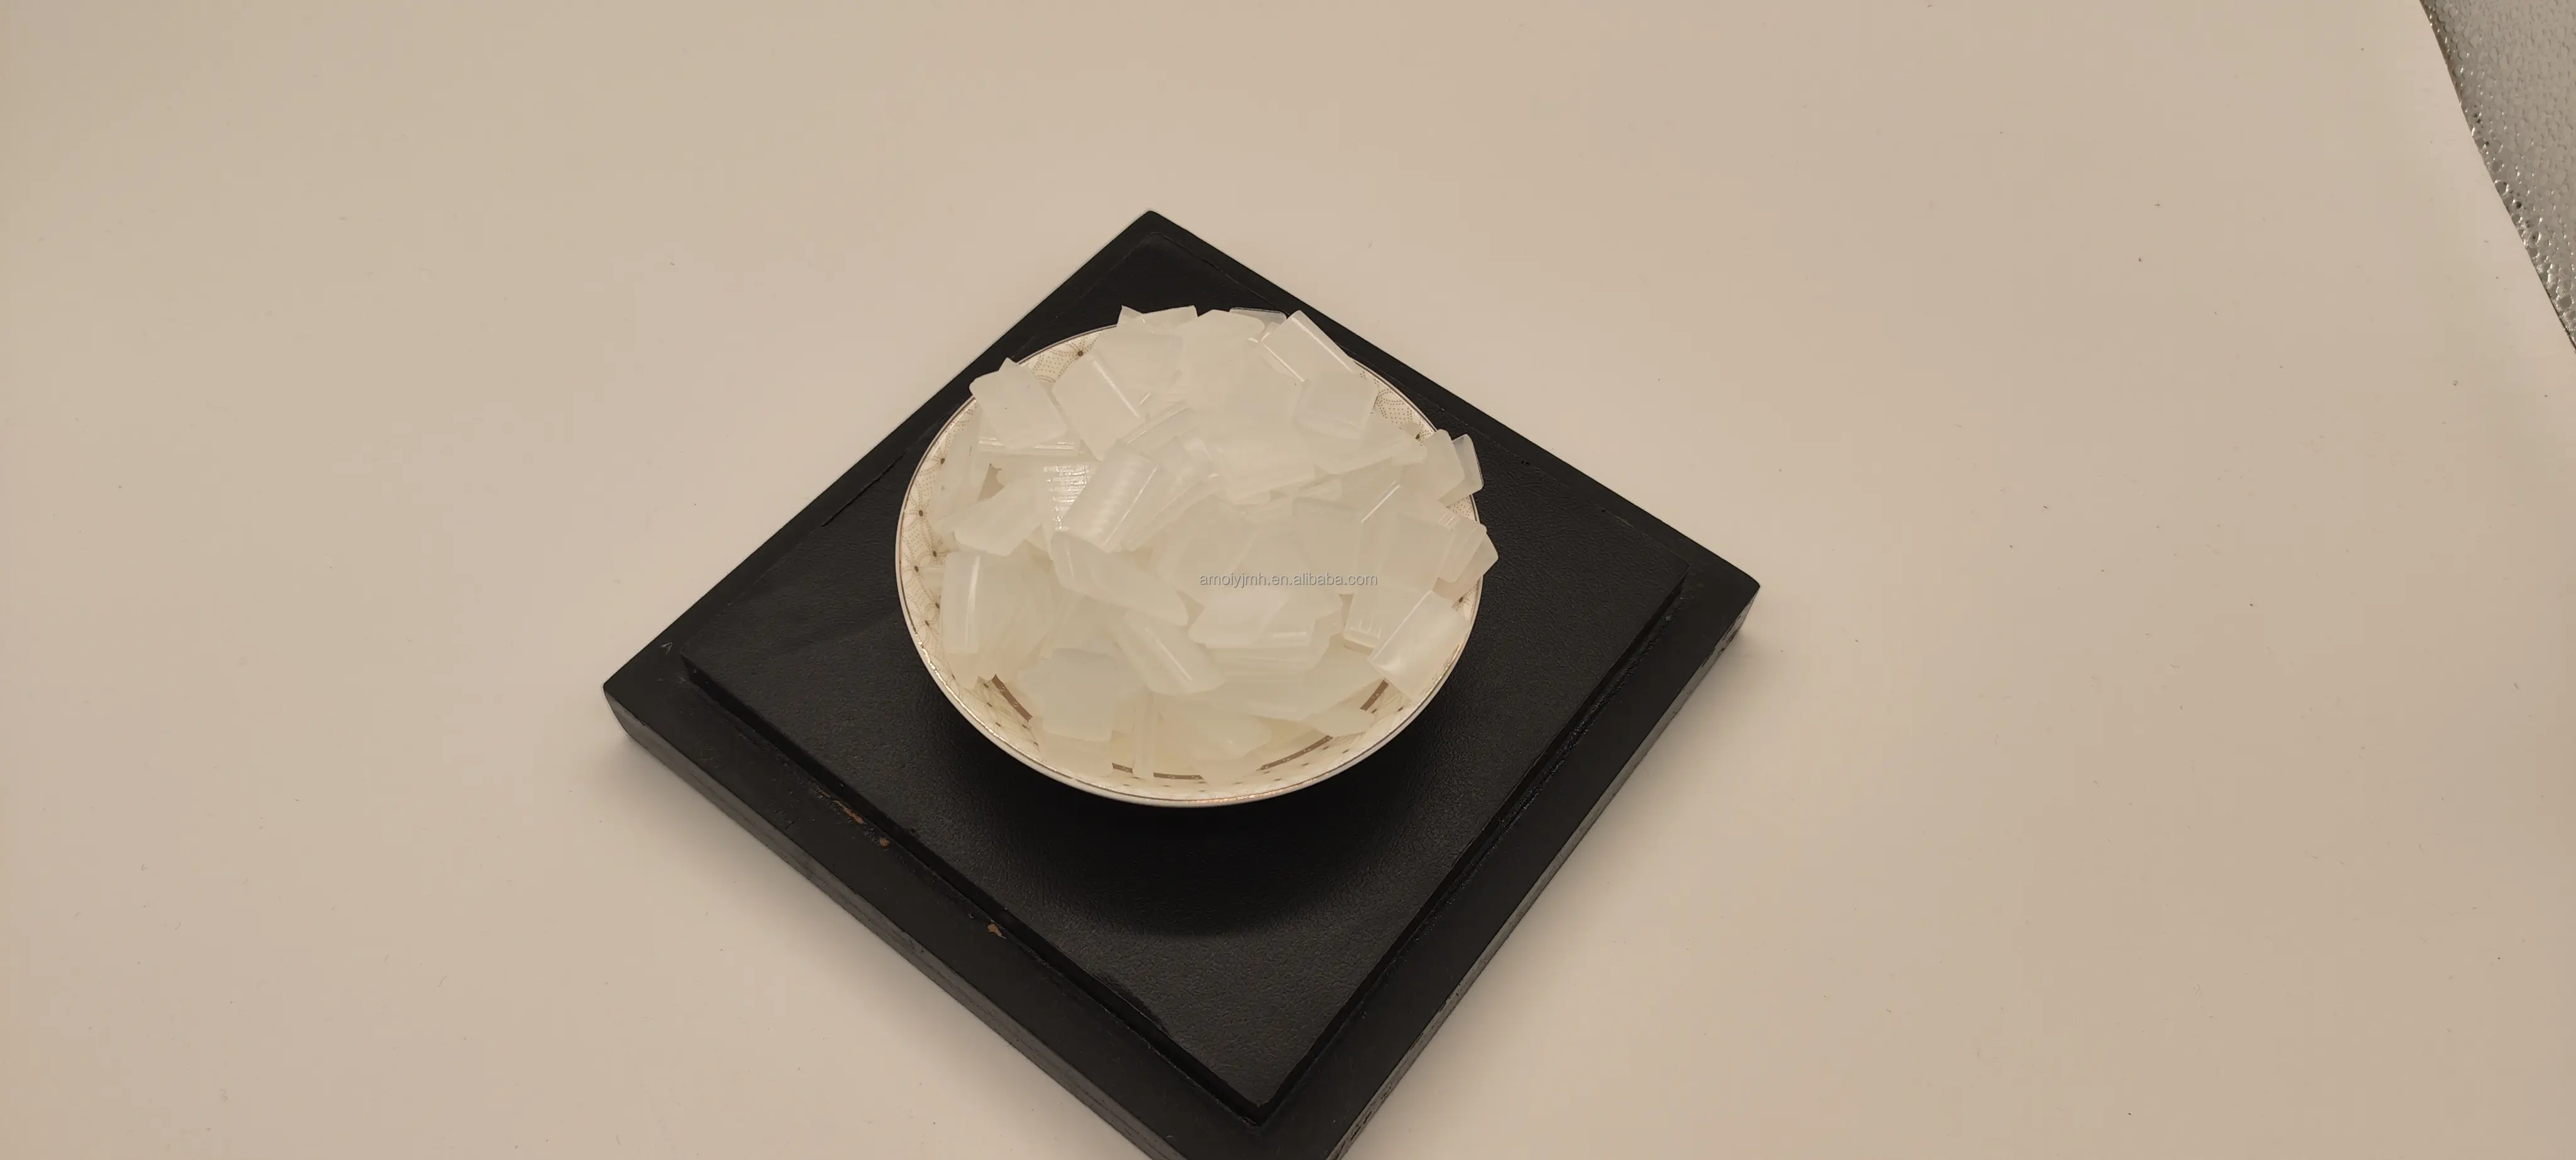 Werkslieferung Möbelrand Bandband heißschmelzender Kleber aus China